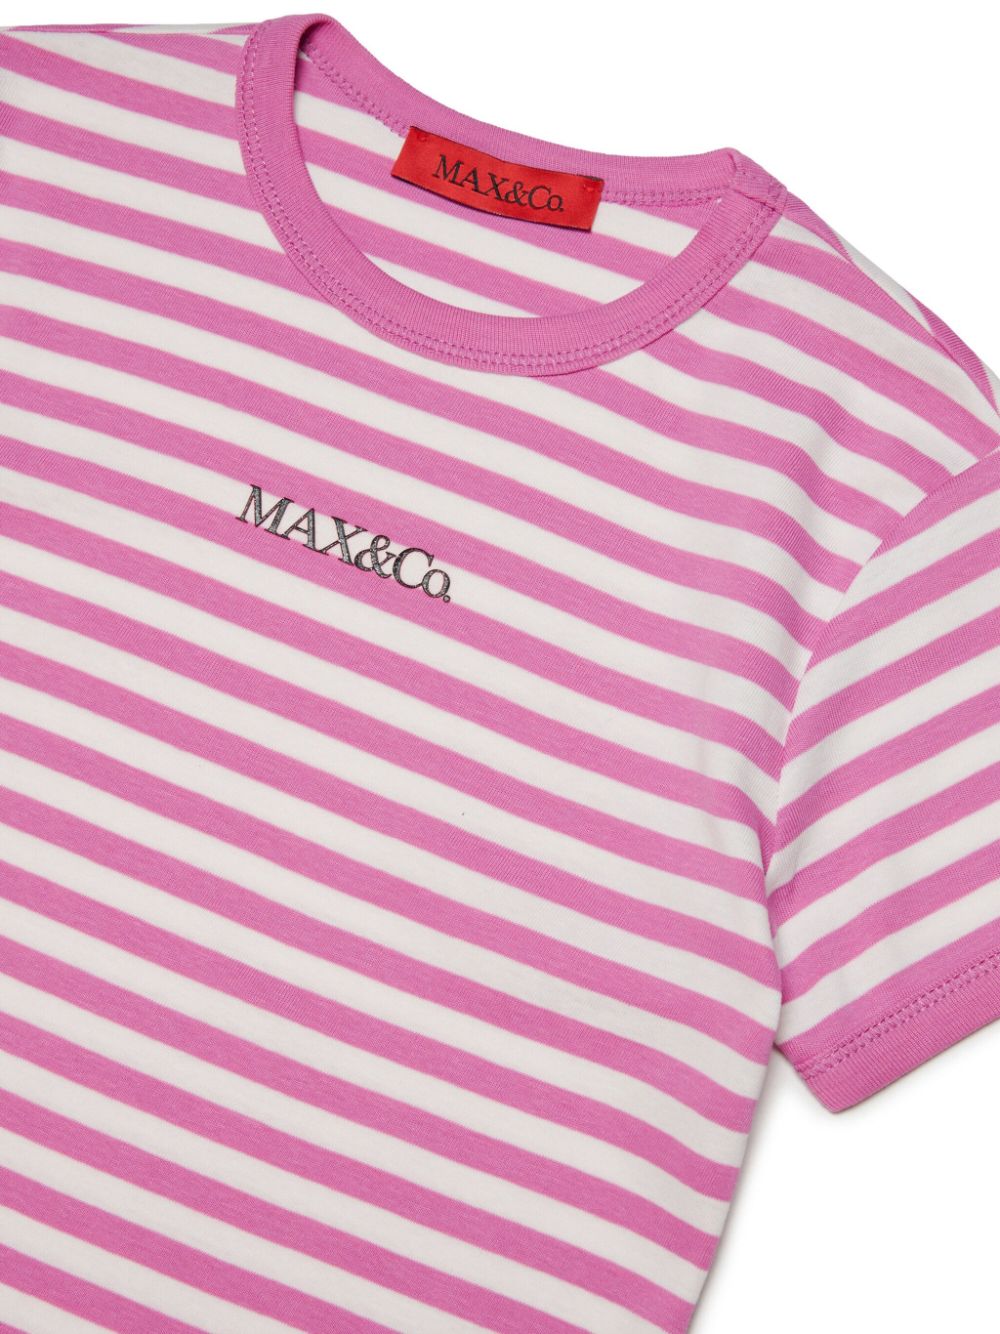 T-shirt bianca e rosa per bambina con logo